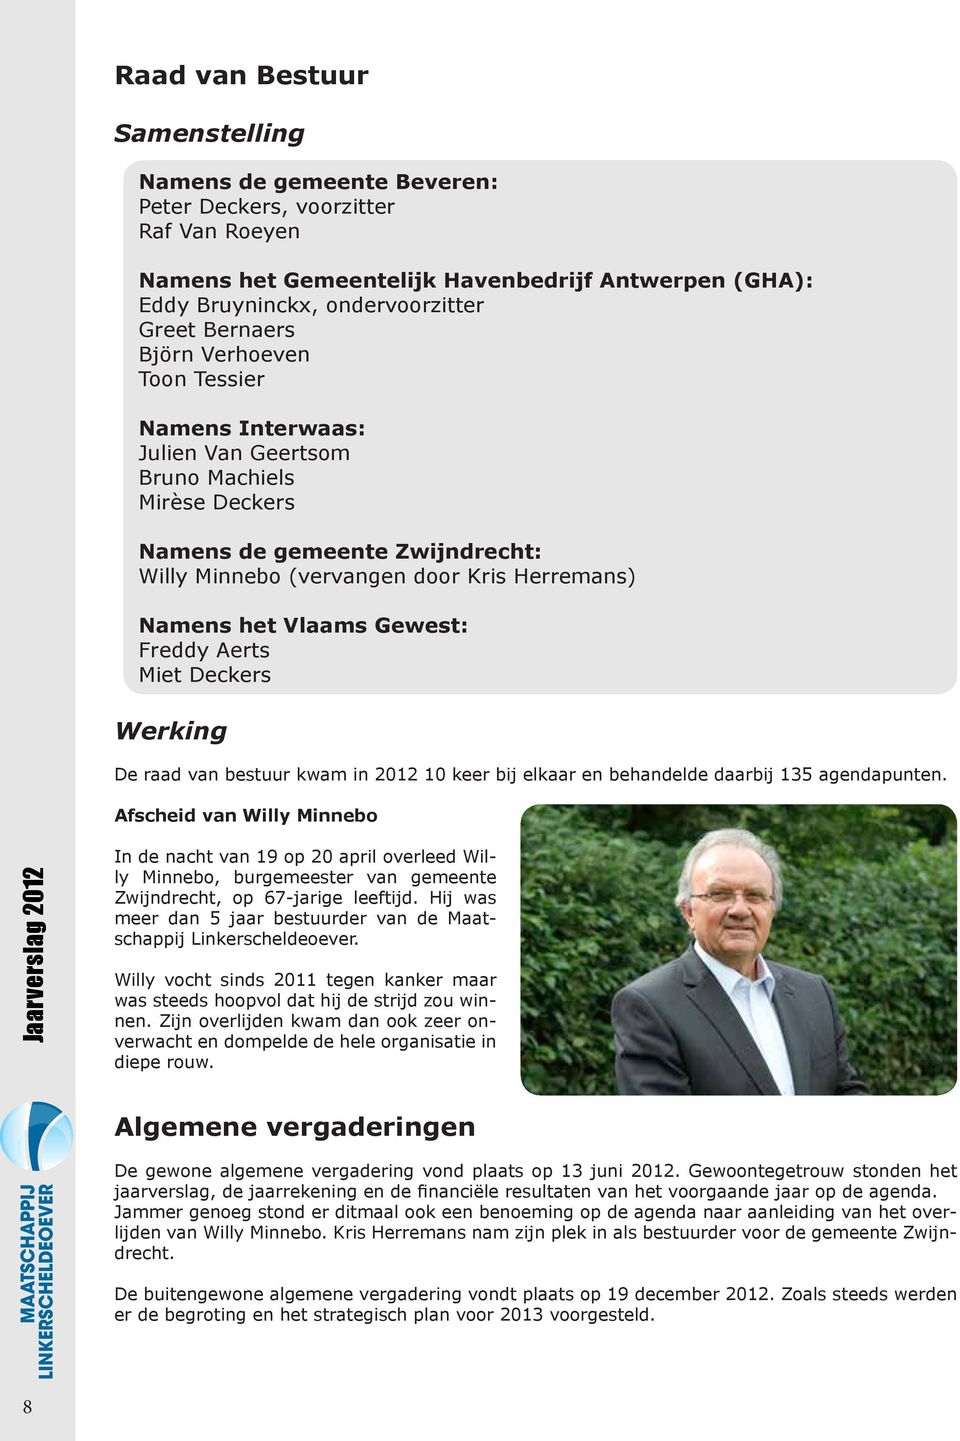 Vlaams Gewest: Freddy Aerts Miet Deckers Werking De raad van bestuur kwam in 2012 10 keer bij elkaar en behandelde daarbij 135 agendapunten.